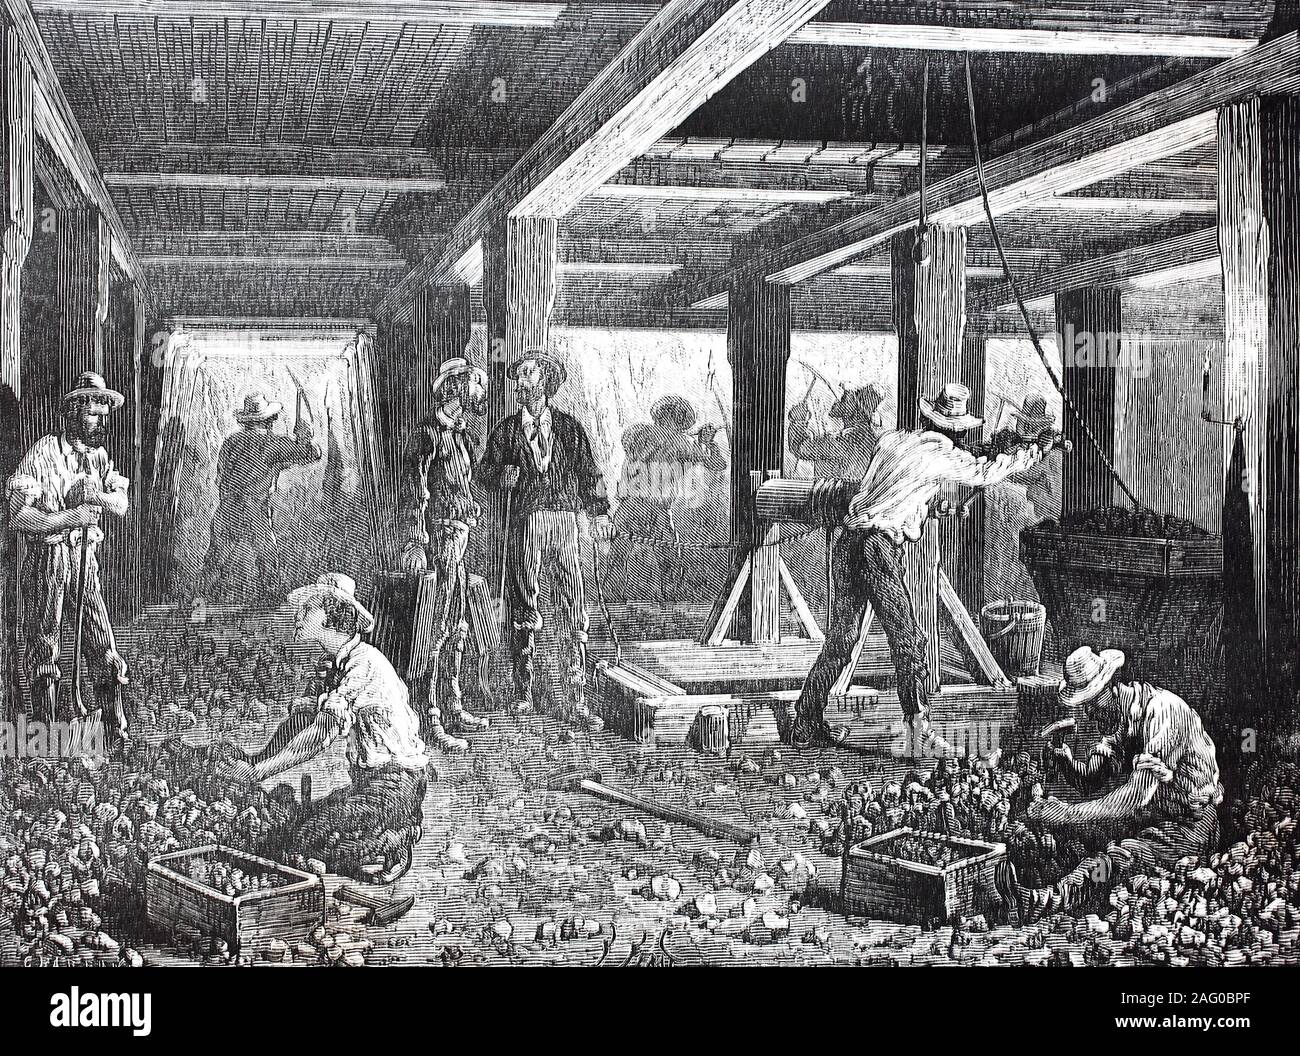 Les travailleurs dans les mines d'argent du Nevada, USA / Arbeiter in den Silberminen von Nevada, USA, la reproduction d'un original du 19ème siècle, l'amélioration numérique / Reproduktion einer Vorlage aus dem 19. Jahrhundert, OECD numérique Banque D'Images